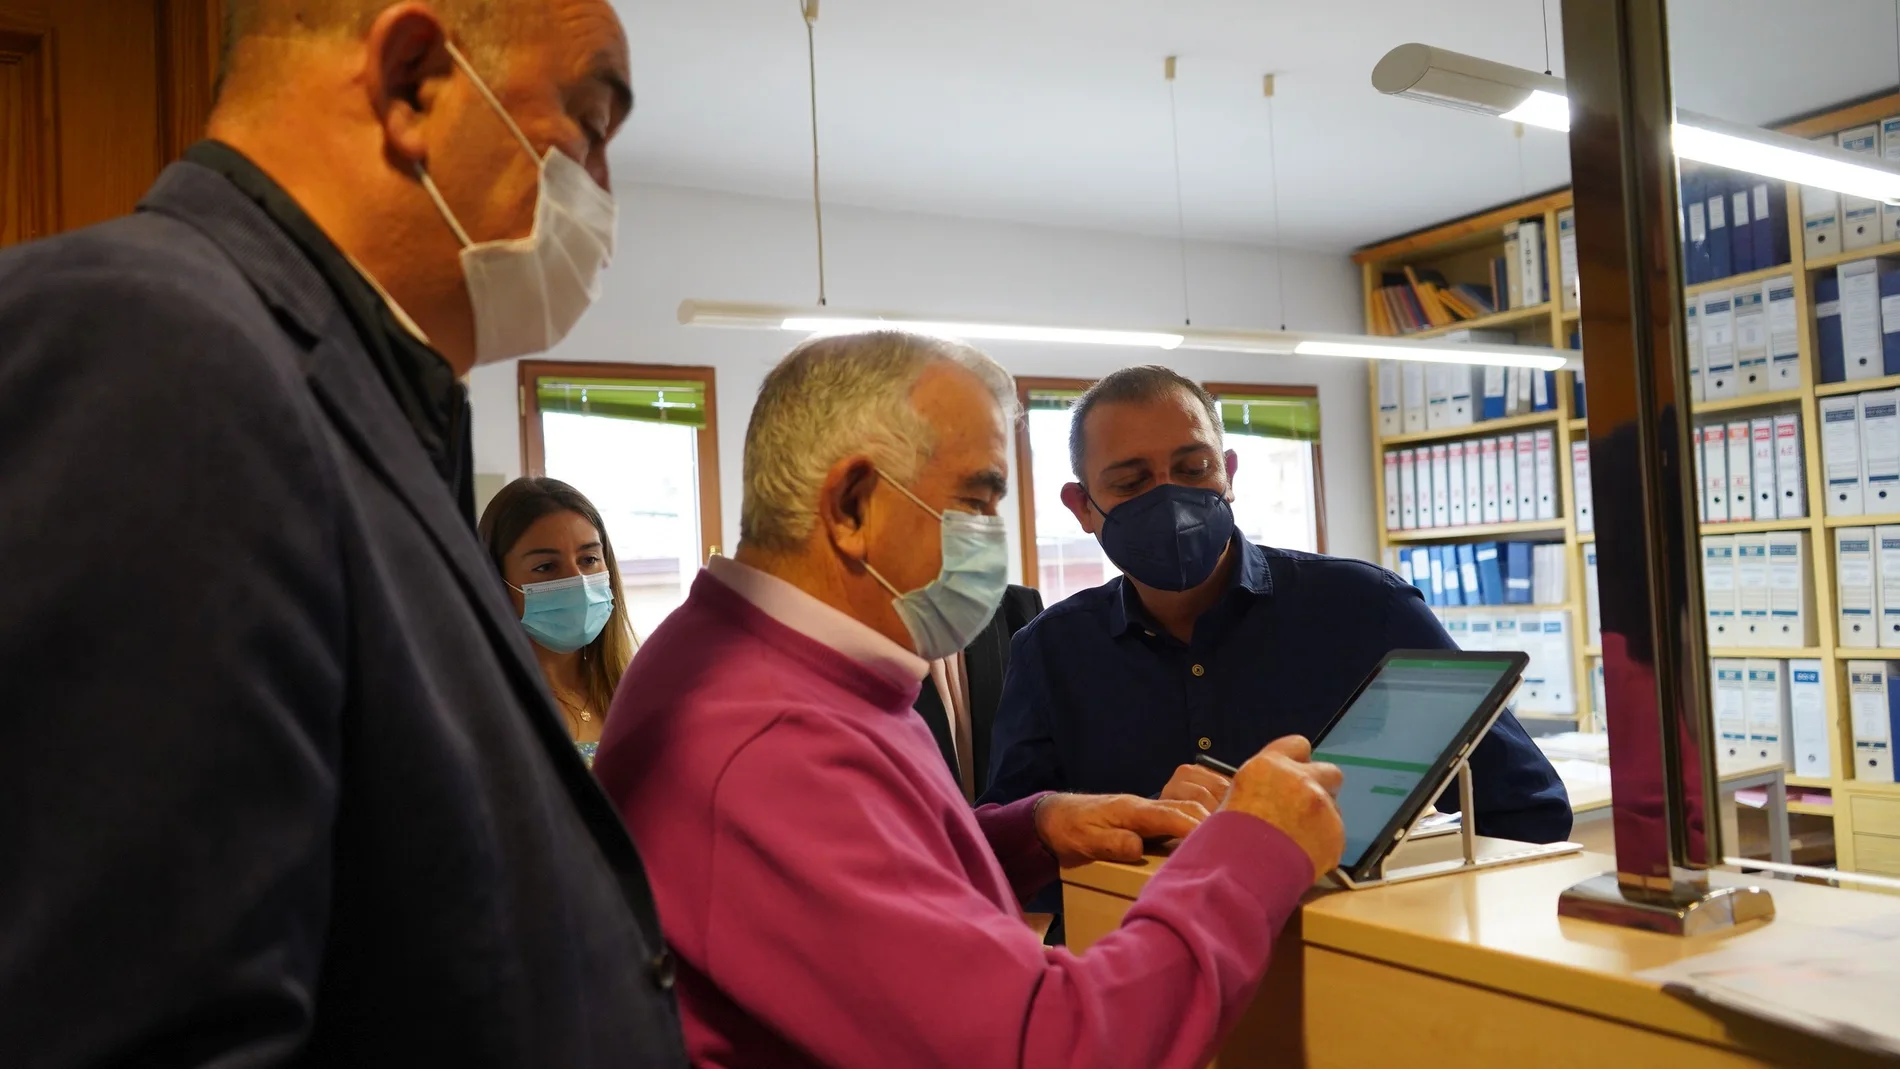 El presidente de la Diputación de Segovia, Miguel Ángel de Vicente, en el ayuntamiento de La lastrilla con un vecino que usa la tableta electrónica para hacer una gestión